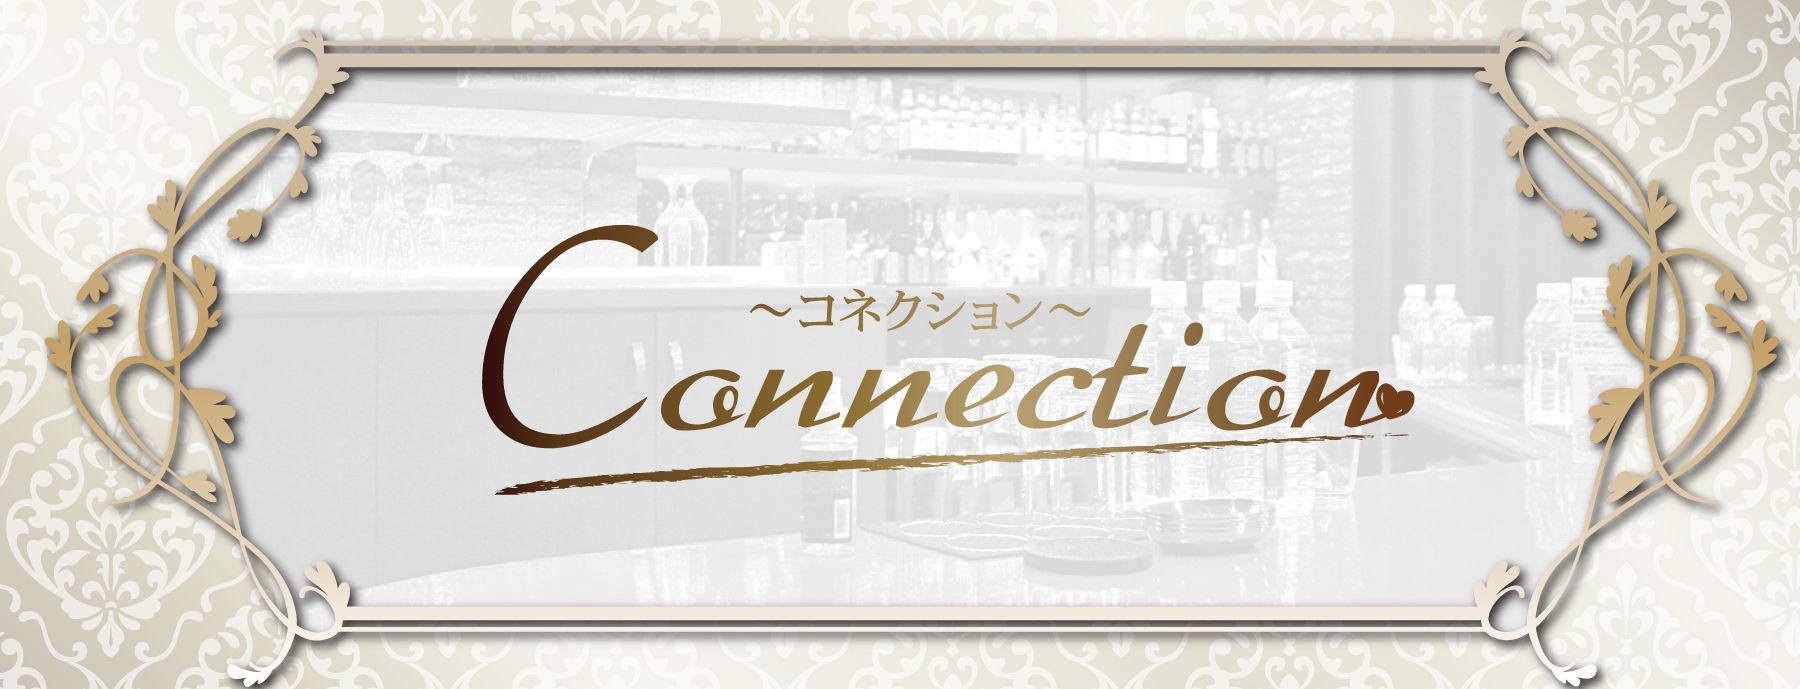 Connection 〜コネクション〜